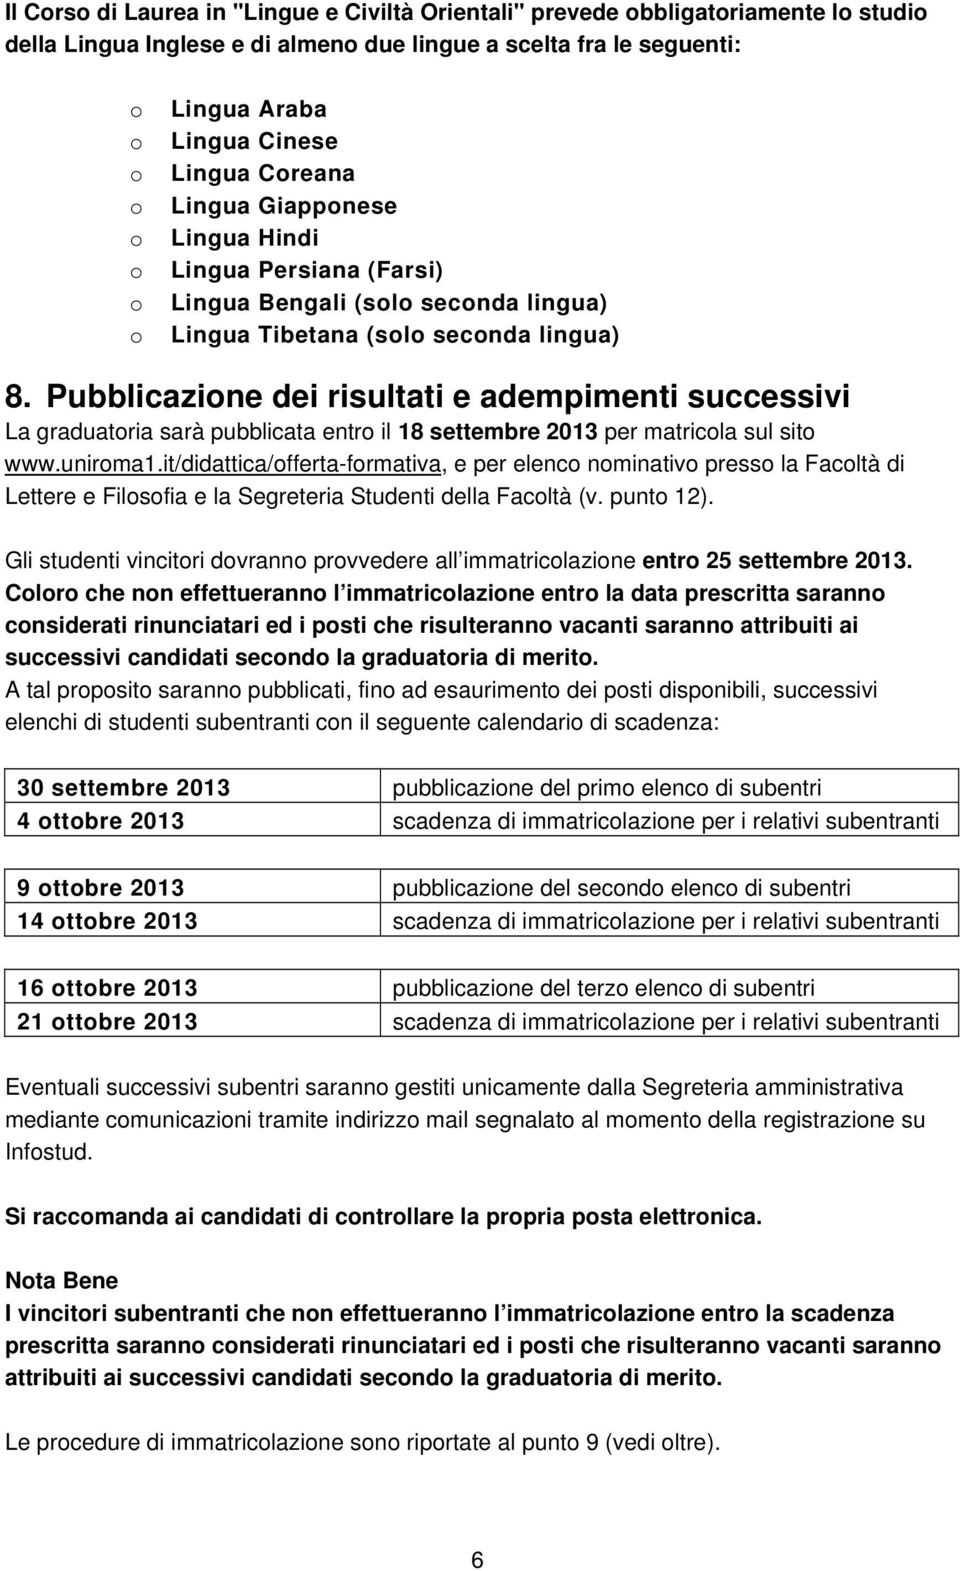 Pubblicazine dei risultati e adempimenti successivi La graduatria sarà pubblicata entr il 18 settembre 2013 per matricla sul sit www.unirma1.